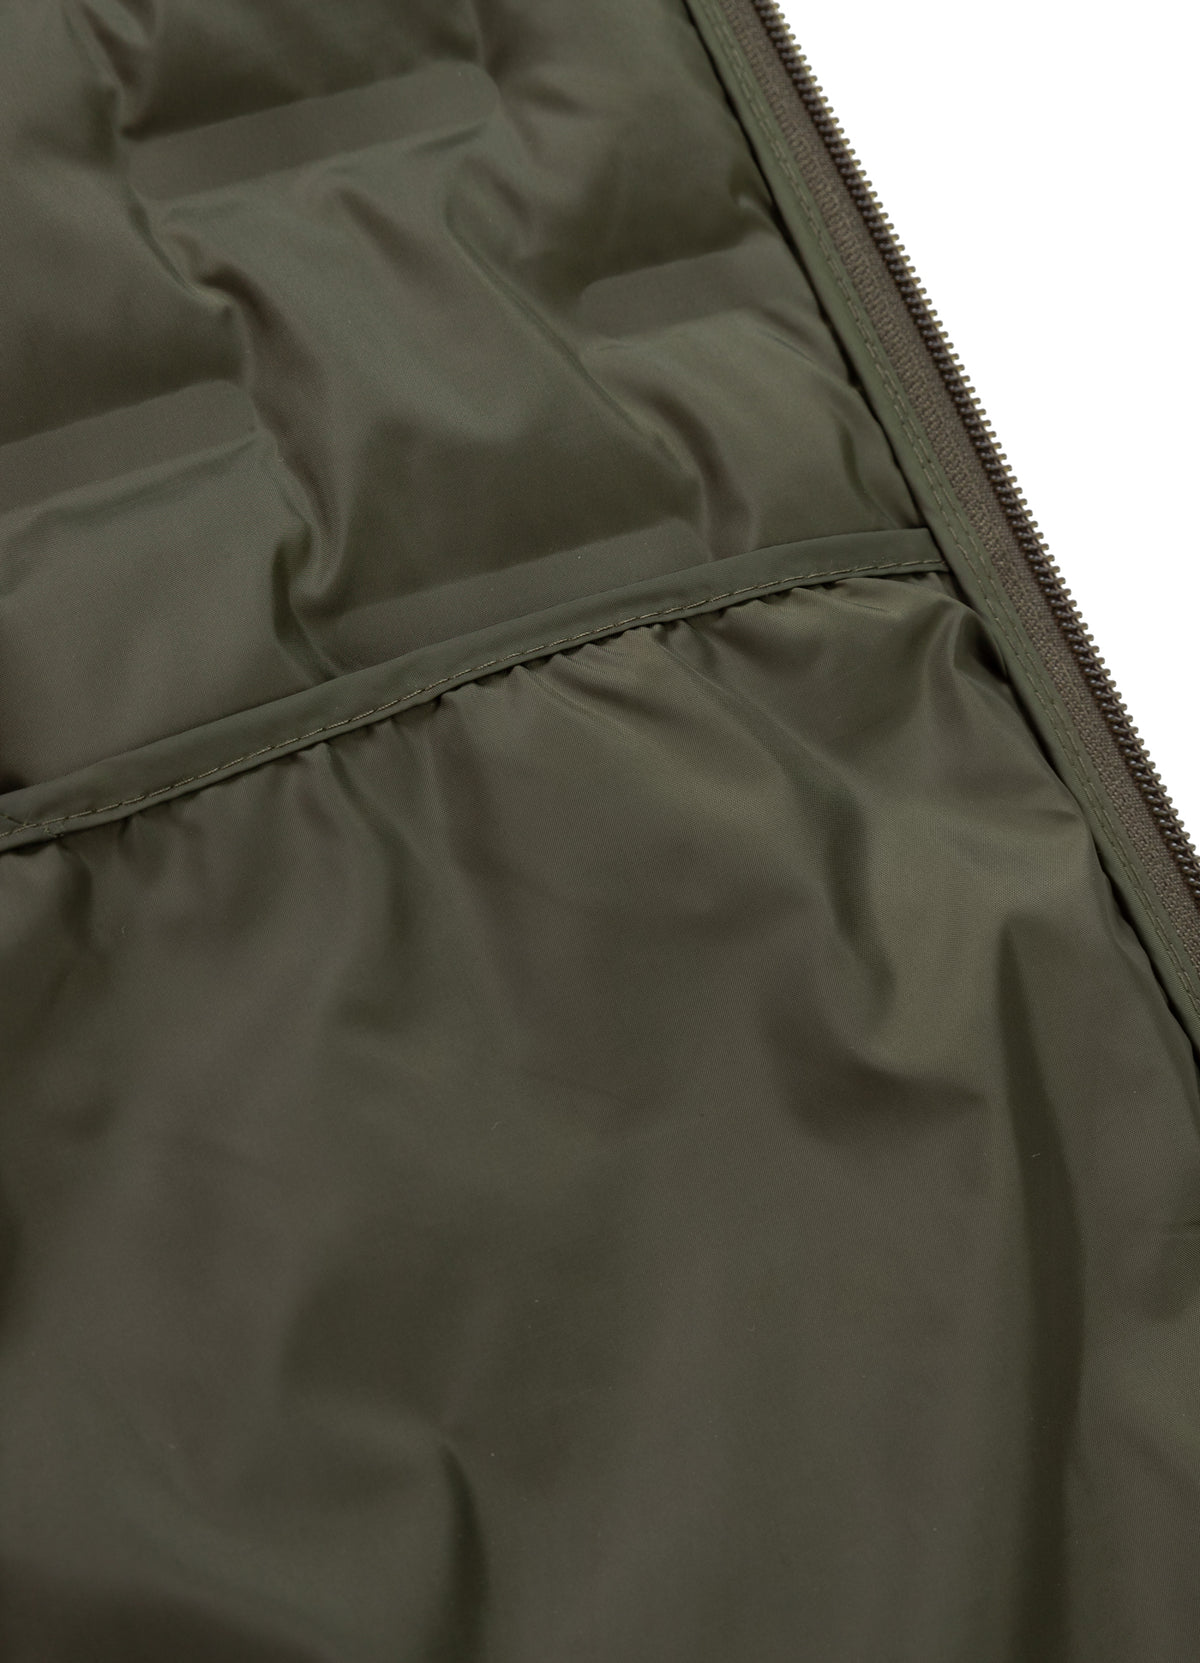 ROXTON Olive Hooded Jacket - Pitbullstore.eu